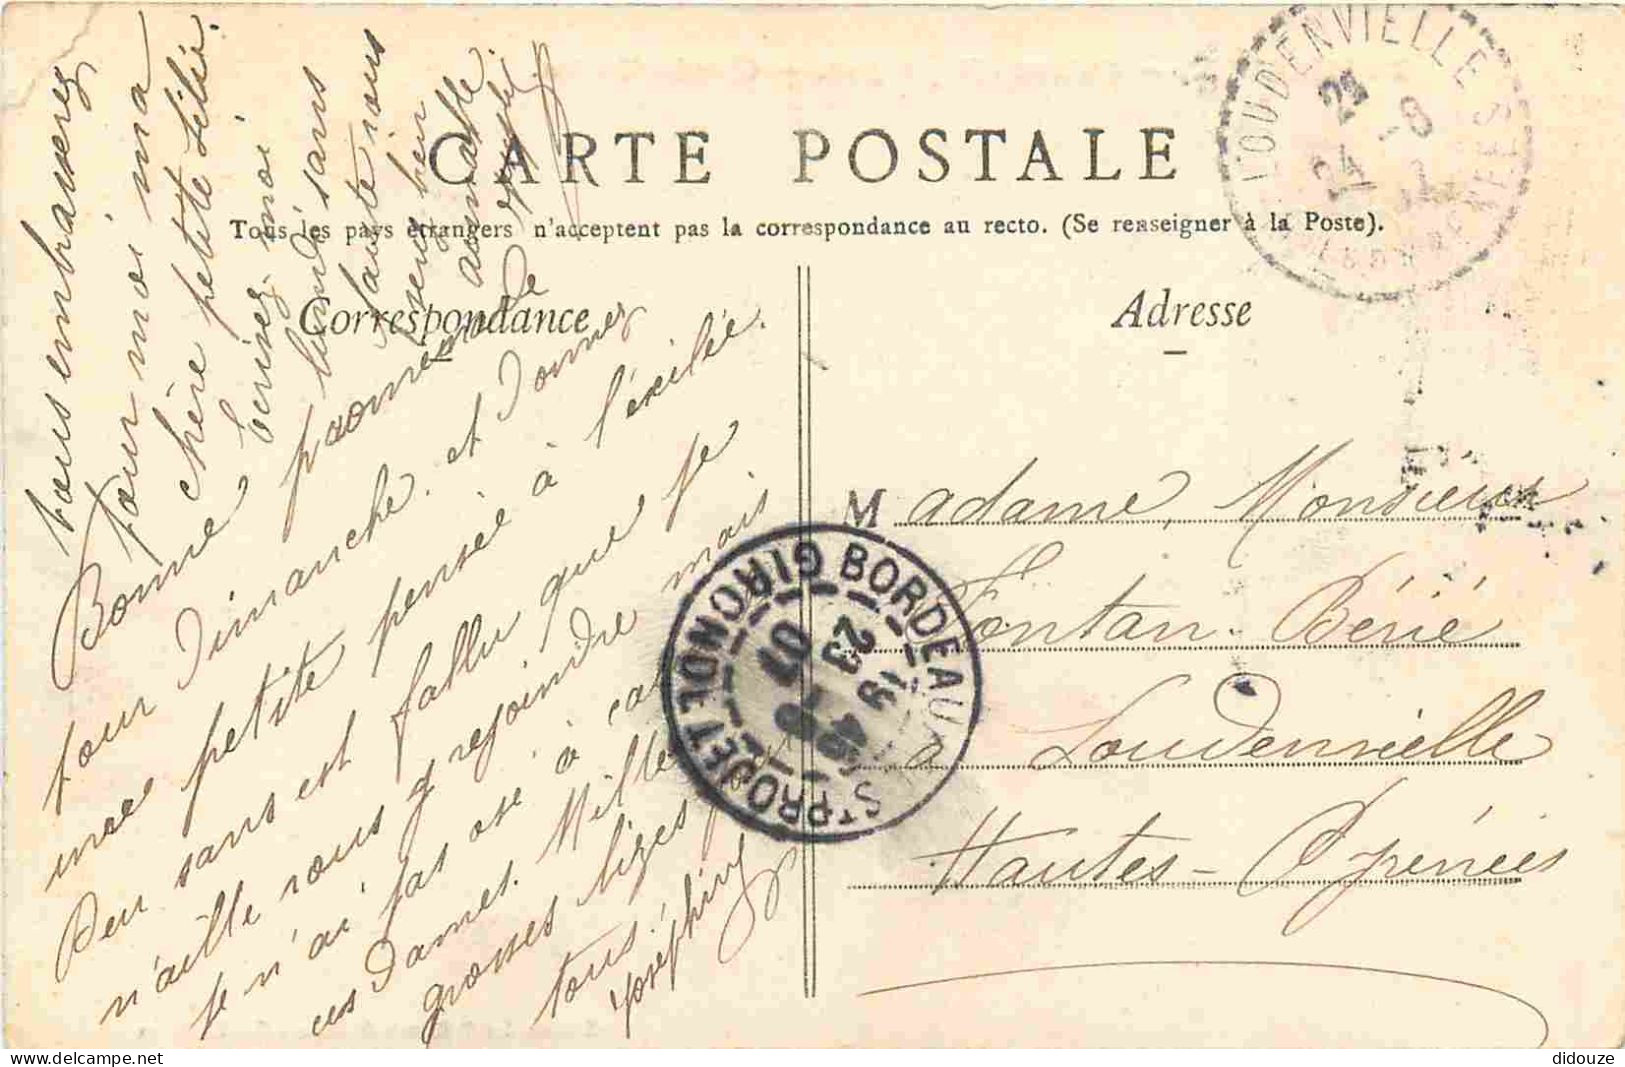 33 - Bordeaux - Caisse D'Epargne - Gloria Victia - Animée - CPA - Oblitération Ronde De 1907 - Voir Scans Recto-Verso - Bordeaux